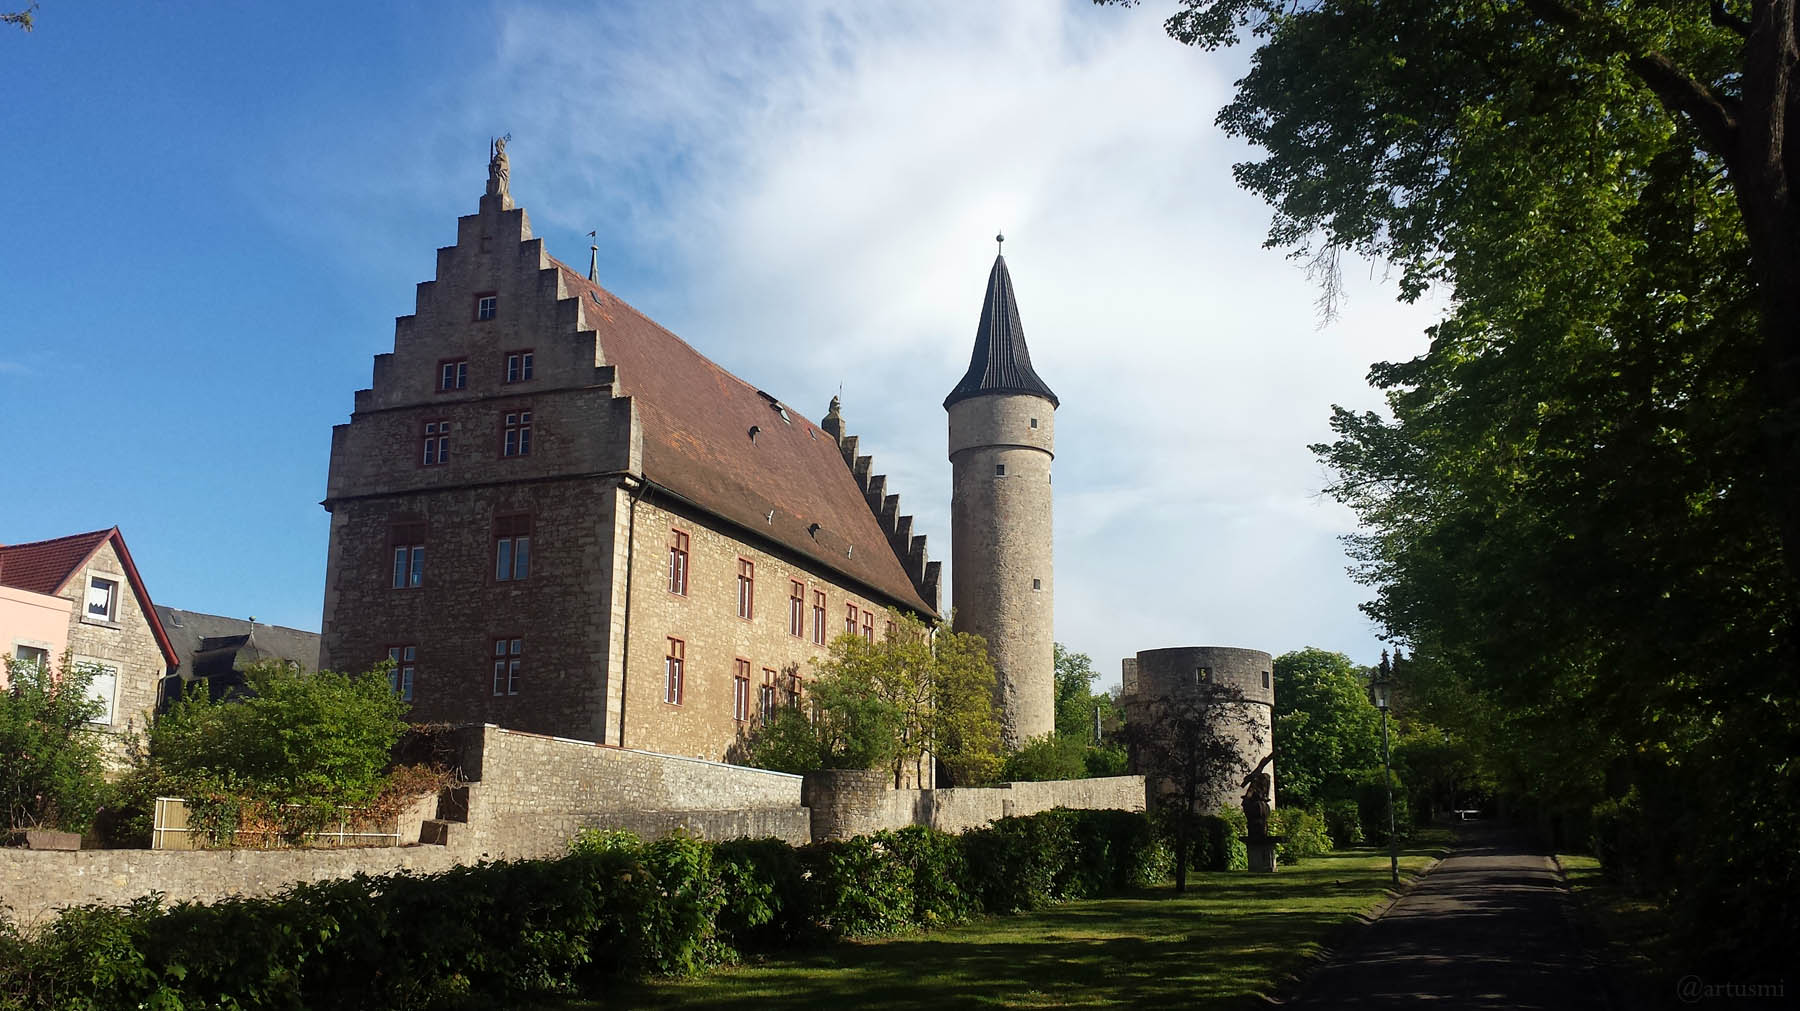 Palatium, Nikolausturm und Dicker Turm in Ochsenfurt